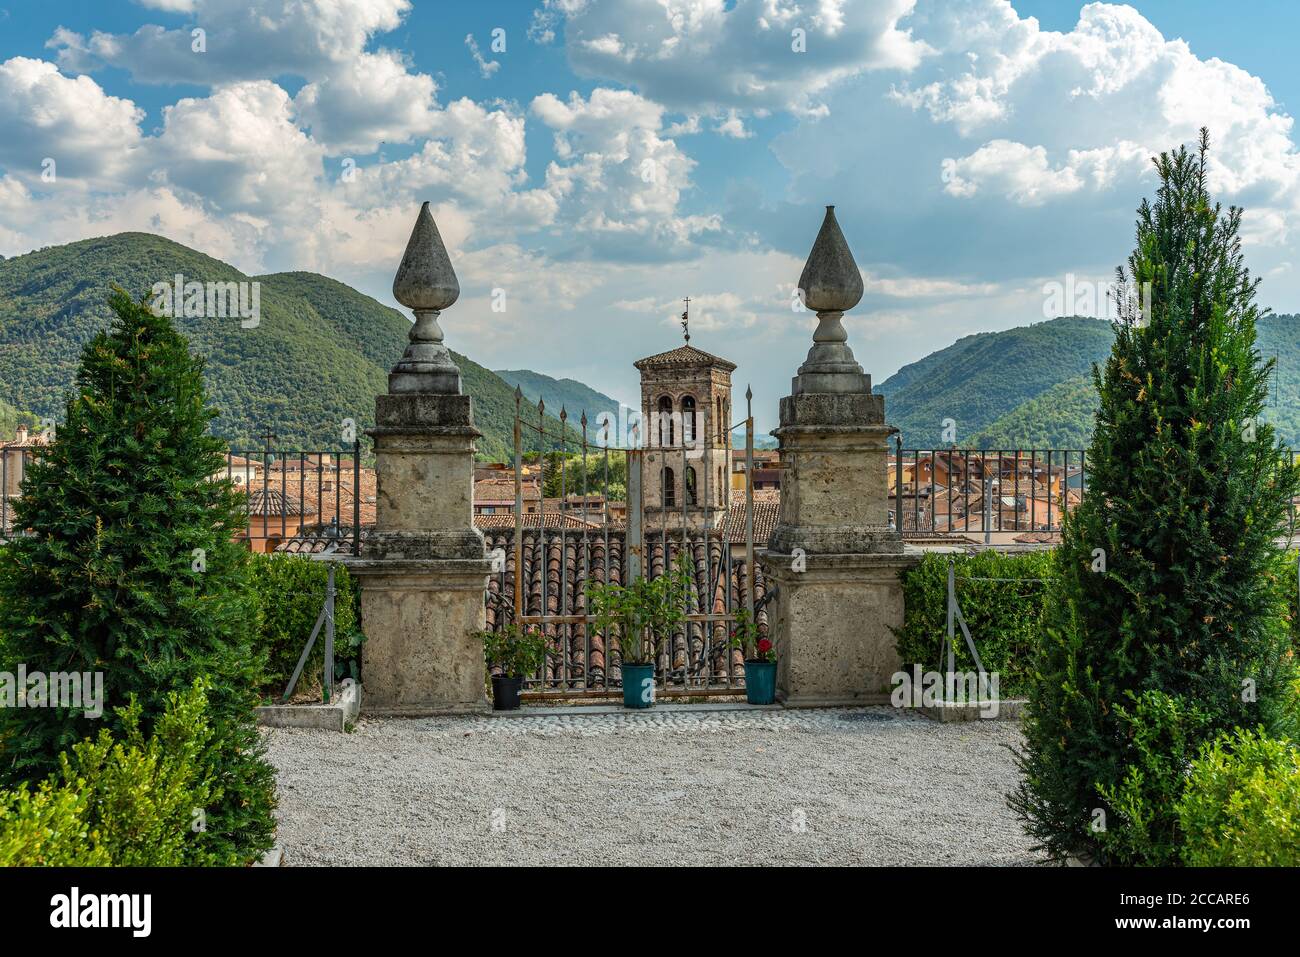 Ein schöner Blick von den Gärten des Palazzo Vincentini auf die Rieti-Ebene und das Sabine-Gebirge. Latium Region, Italien, Europa Stockfoto